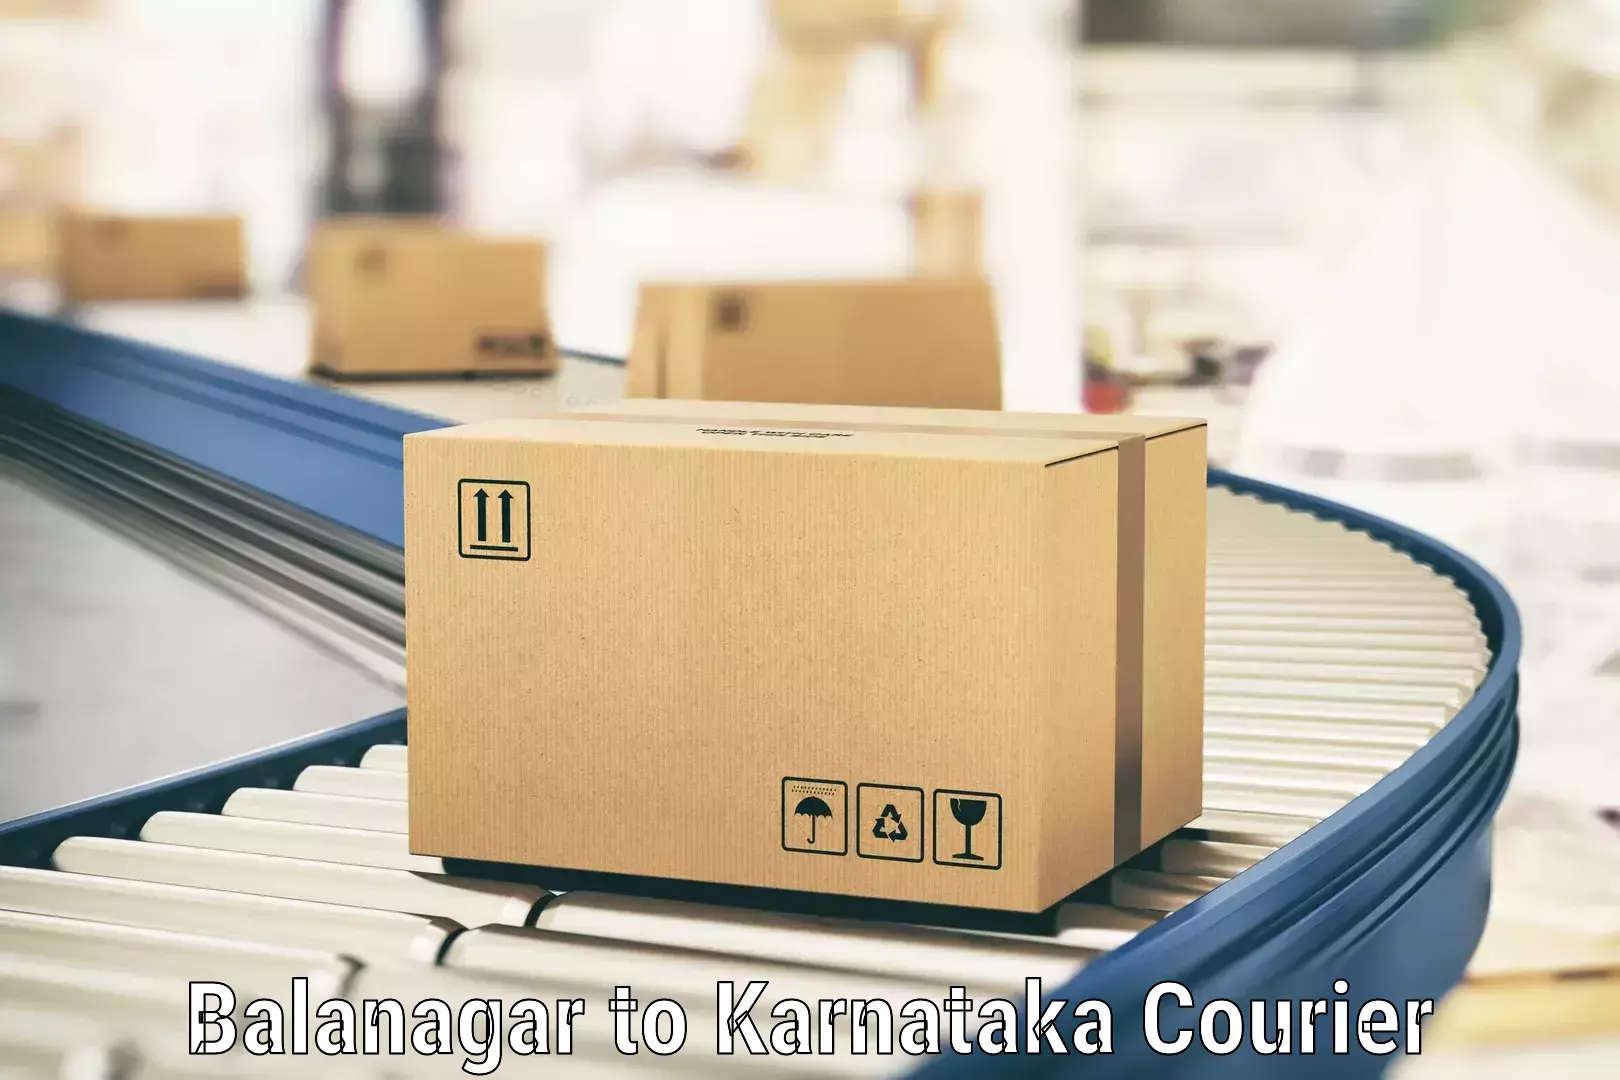 Large package courier Balanagar to Talikoti